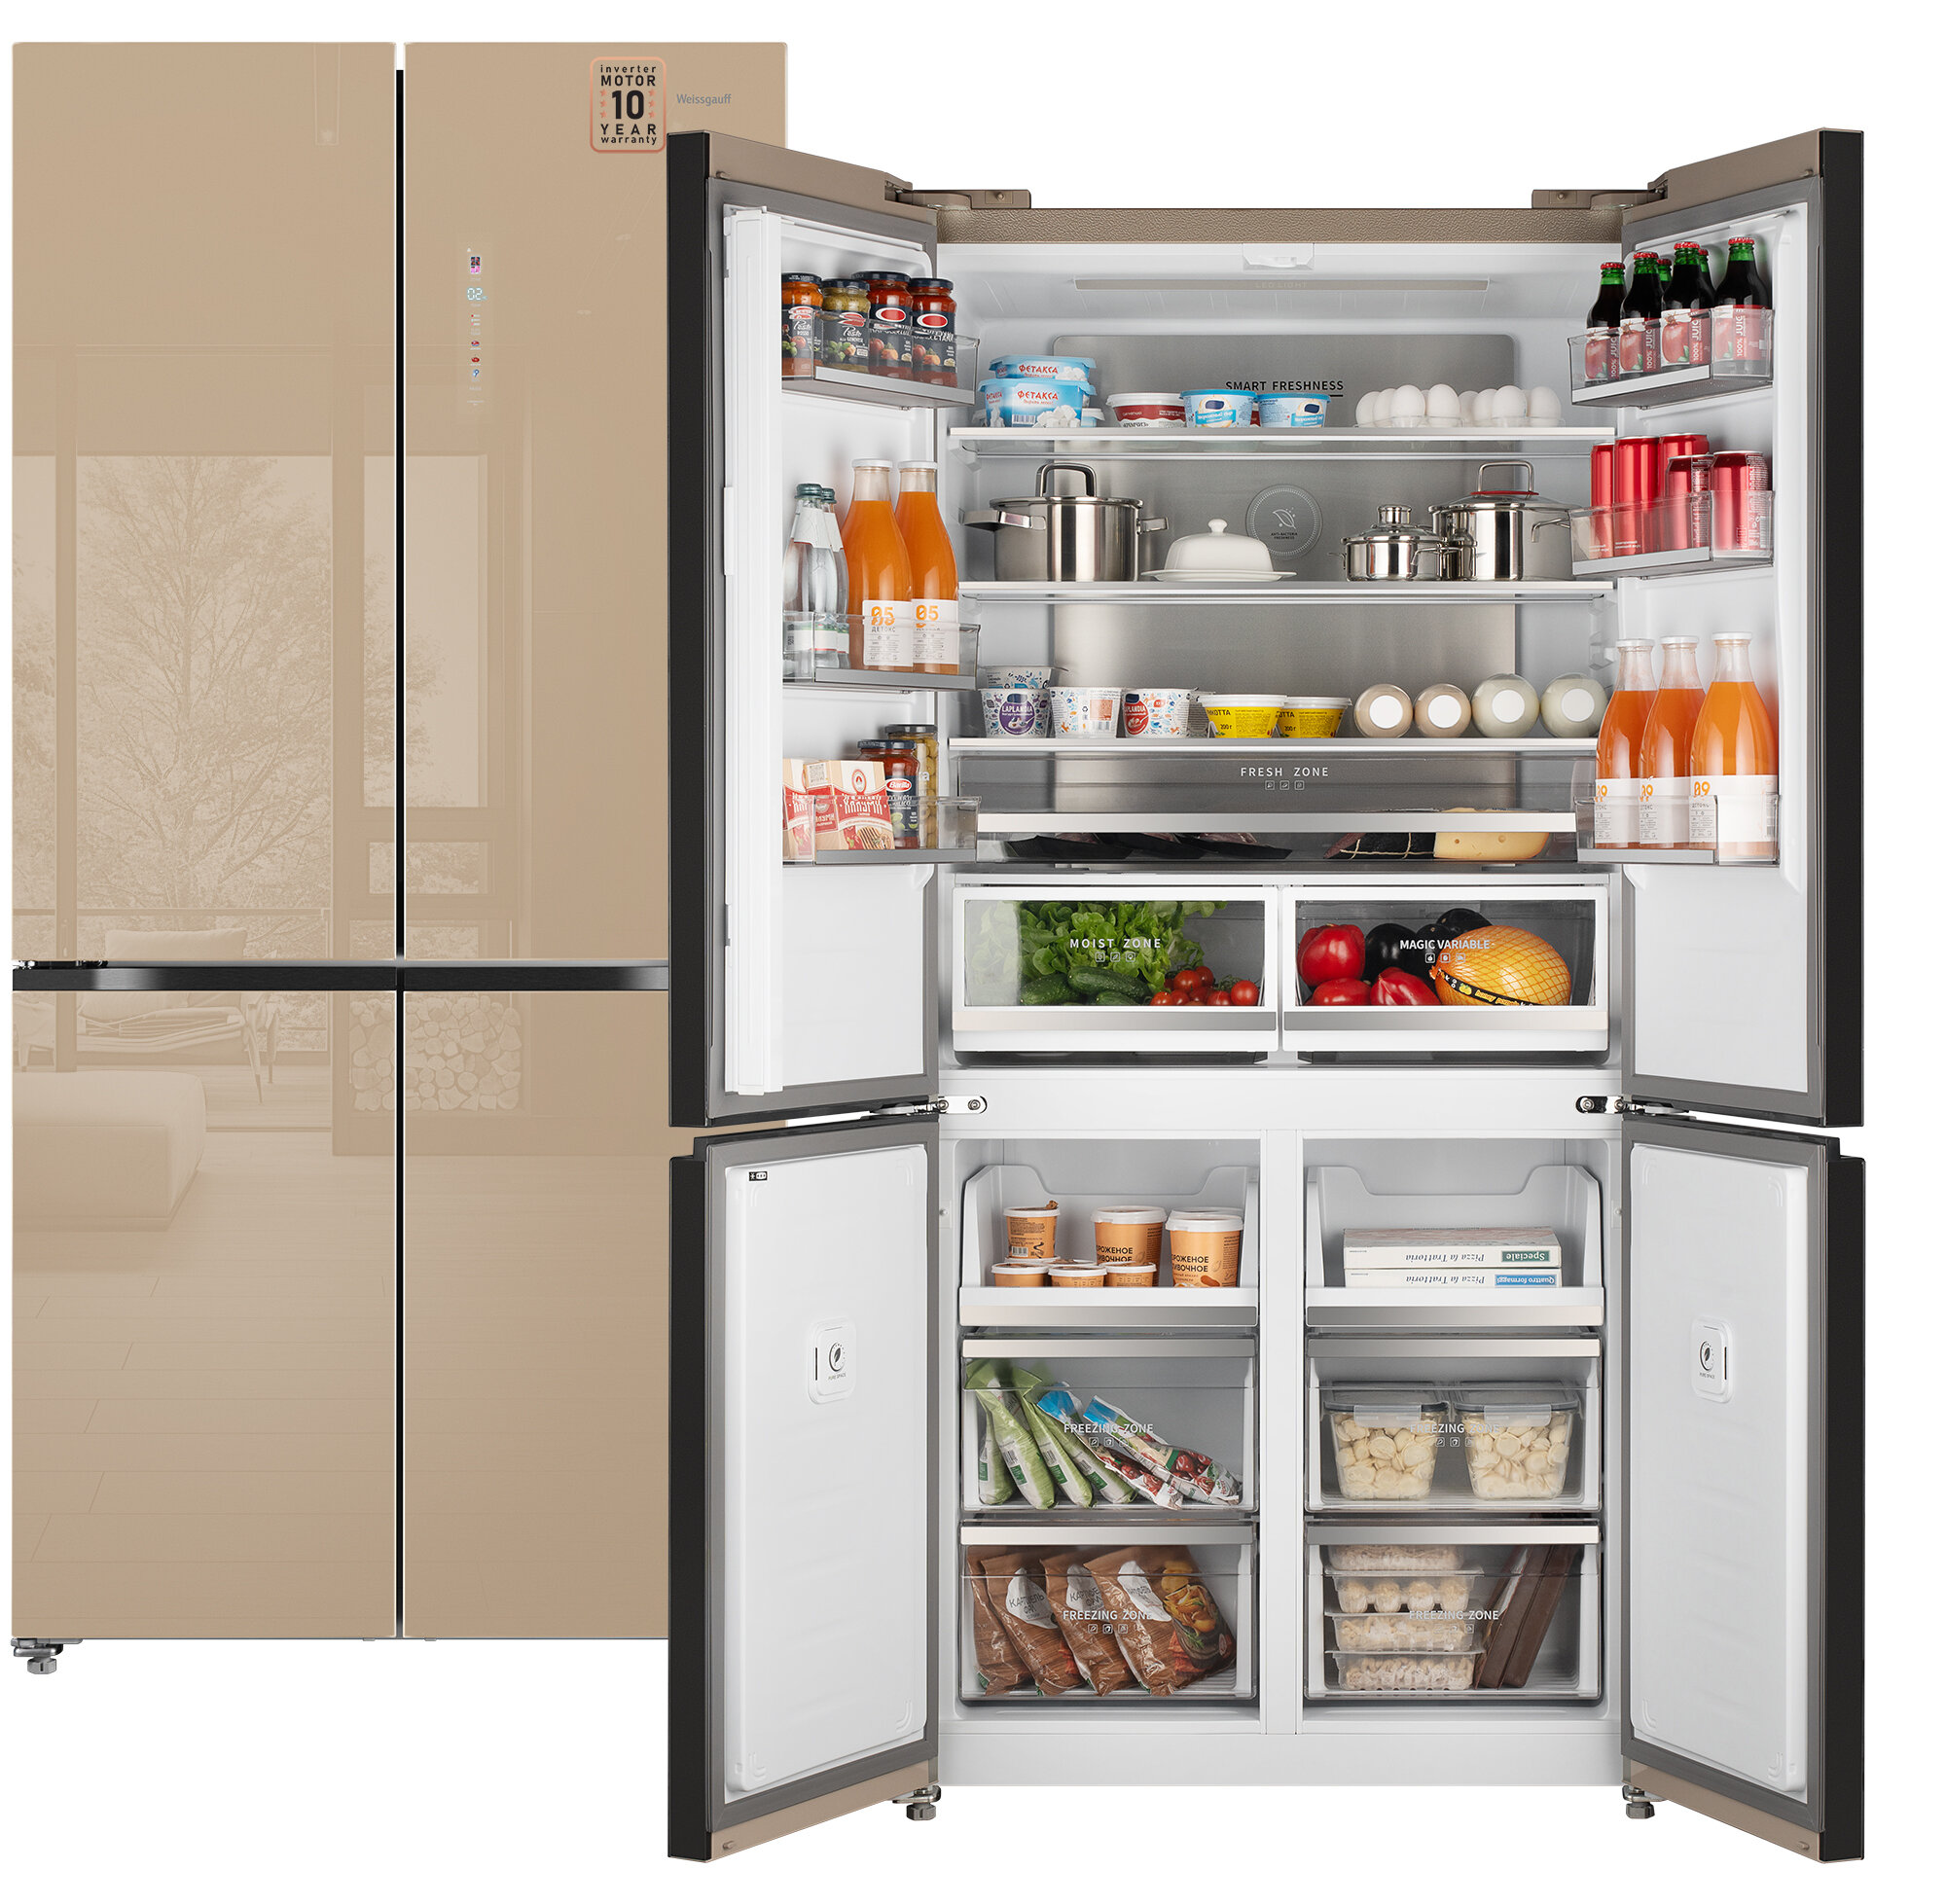 Отдельностоящий холодильник с инвертором Weissgauff WCD 510 Built-in Inverter NoFrost Сhampagne Glass четырех дверный Cross Door, 3 года гарантии, глубина 60 см, Сенсорное управление, Дисплей, Большой объём, суперзаморозка, суперохлаждение